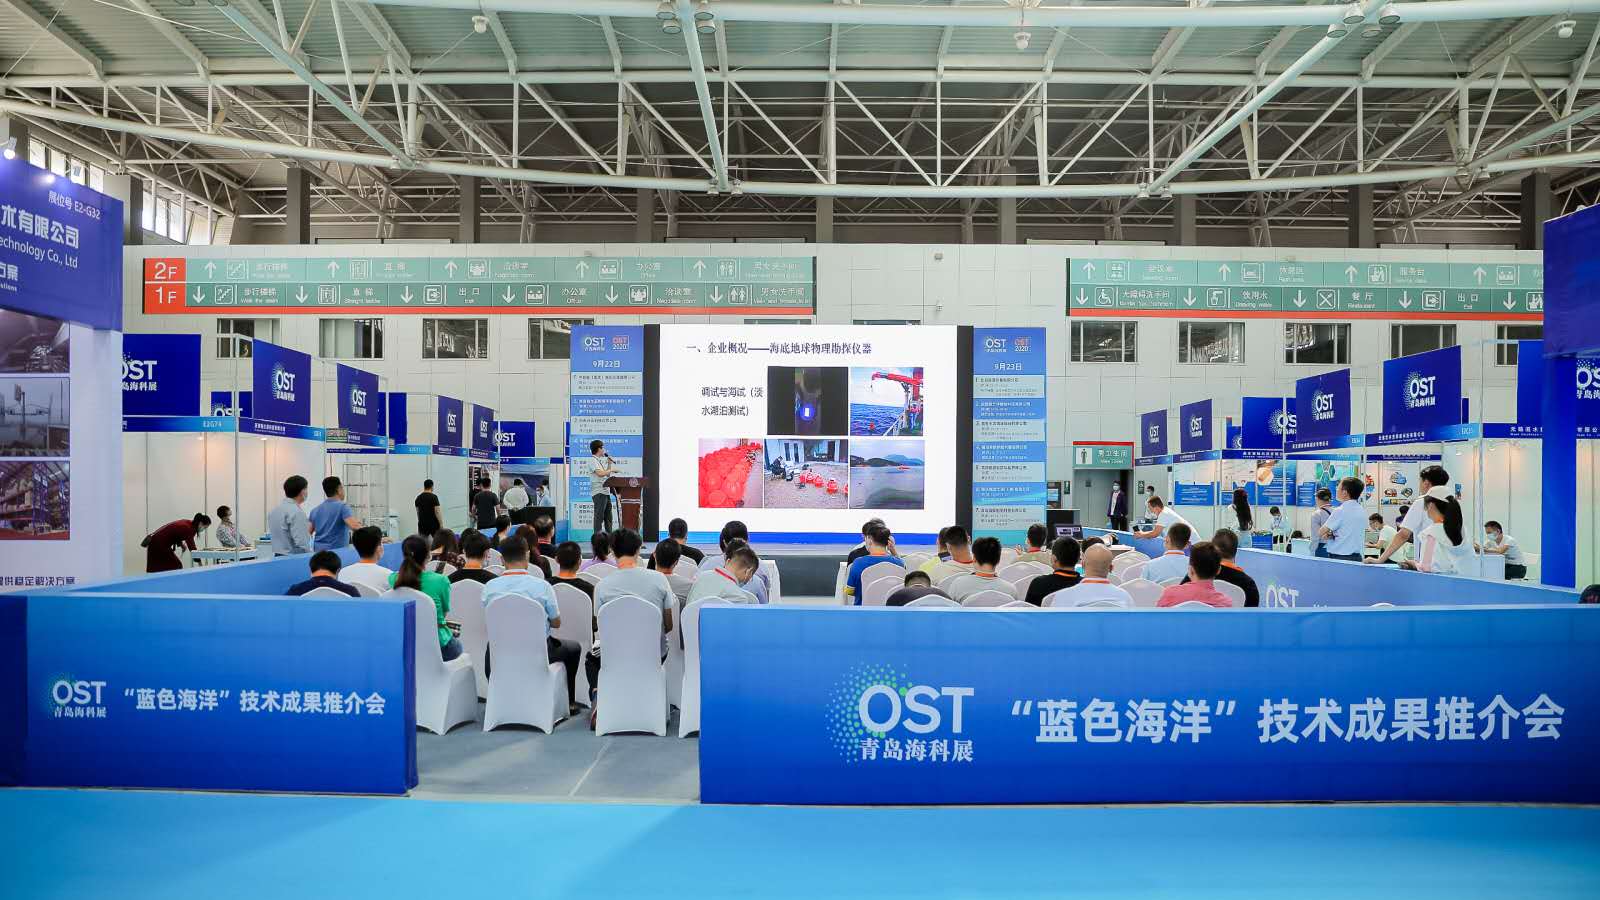 第五届国际海洋科技展览会在青岛举办 呈现众多智慧科技成果